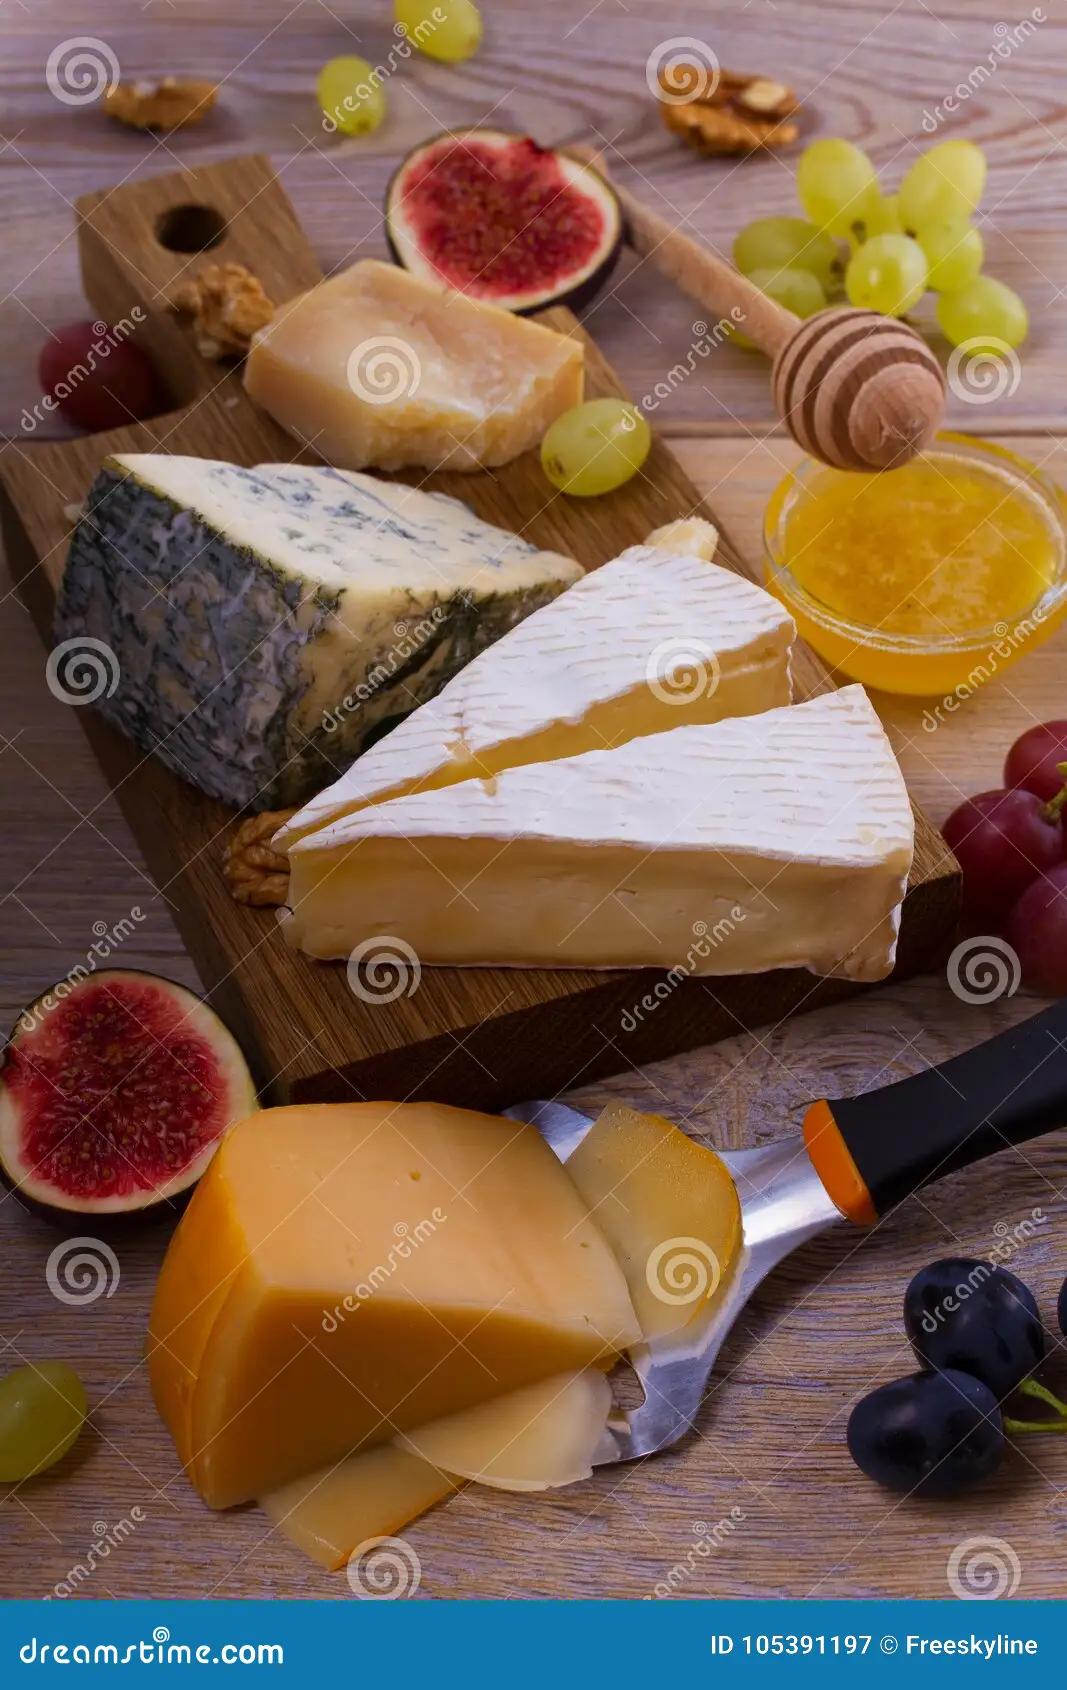 fondo rustico quesos - Cómo se puede comer el queso Brie